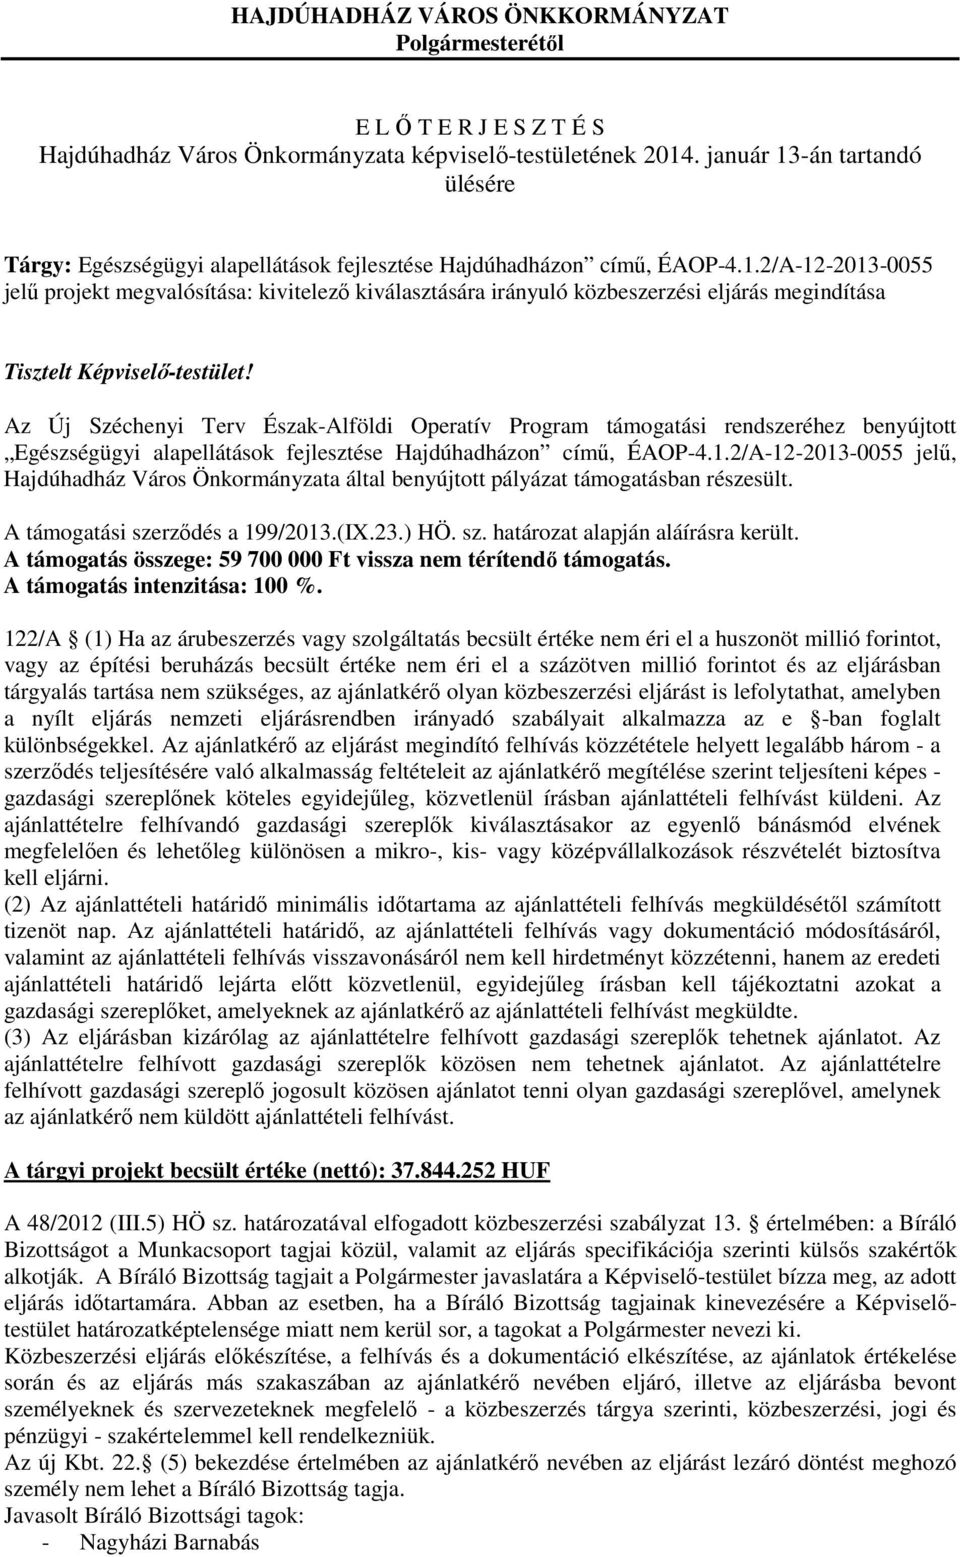 Az Új Széchenyi Terv Észak-Alföldi Operatív Program támogatási rendszeréhez benyújtott Egészségügyi alapellátások fejlesztése Hajdúhadházon című, ÉAOP-4.1.